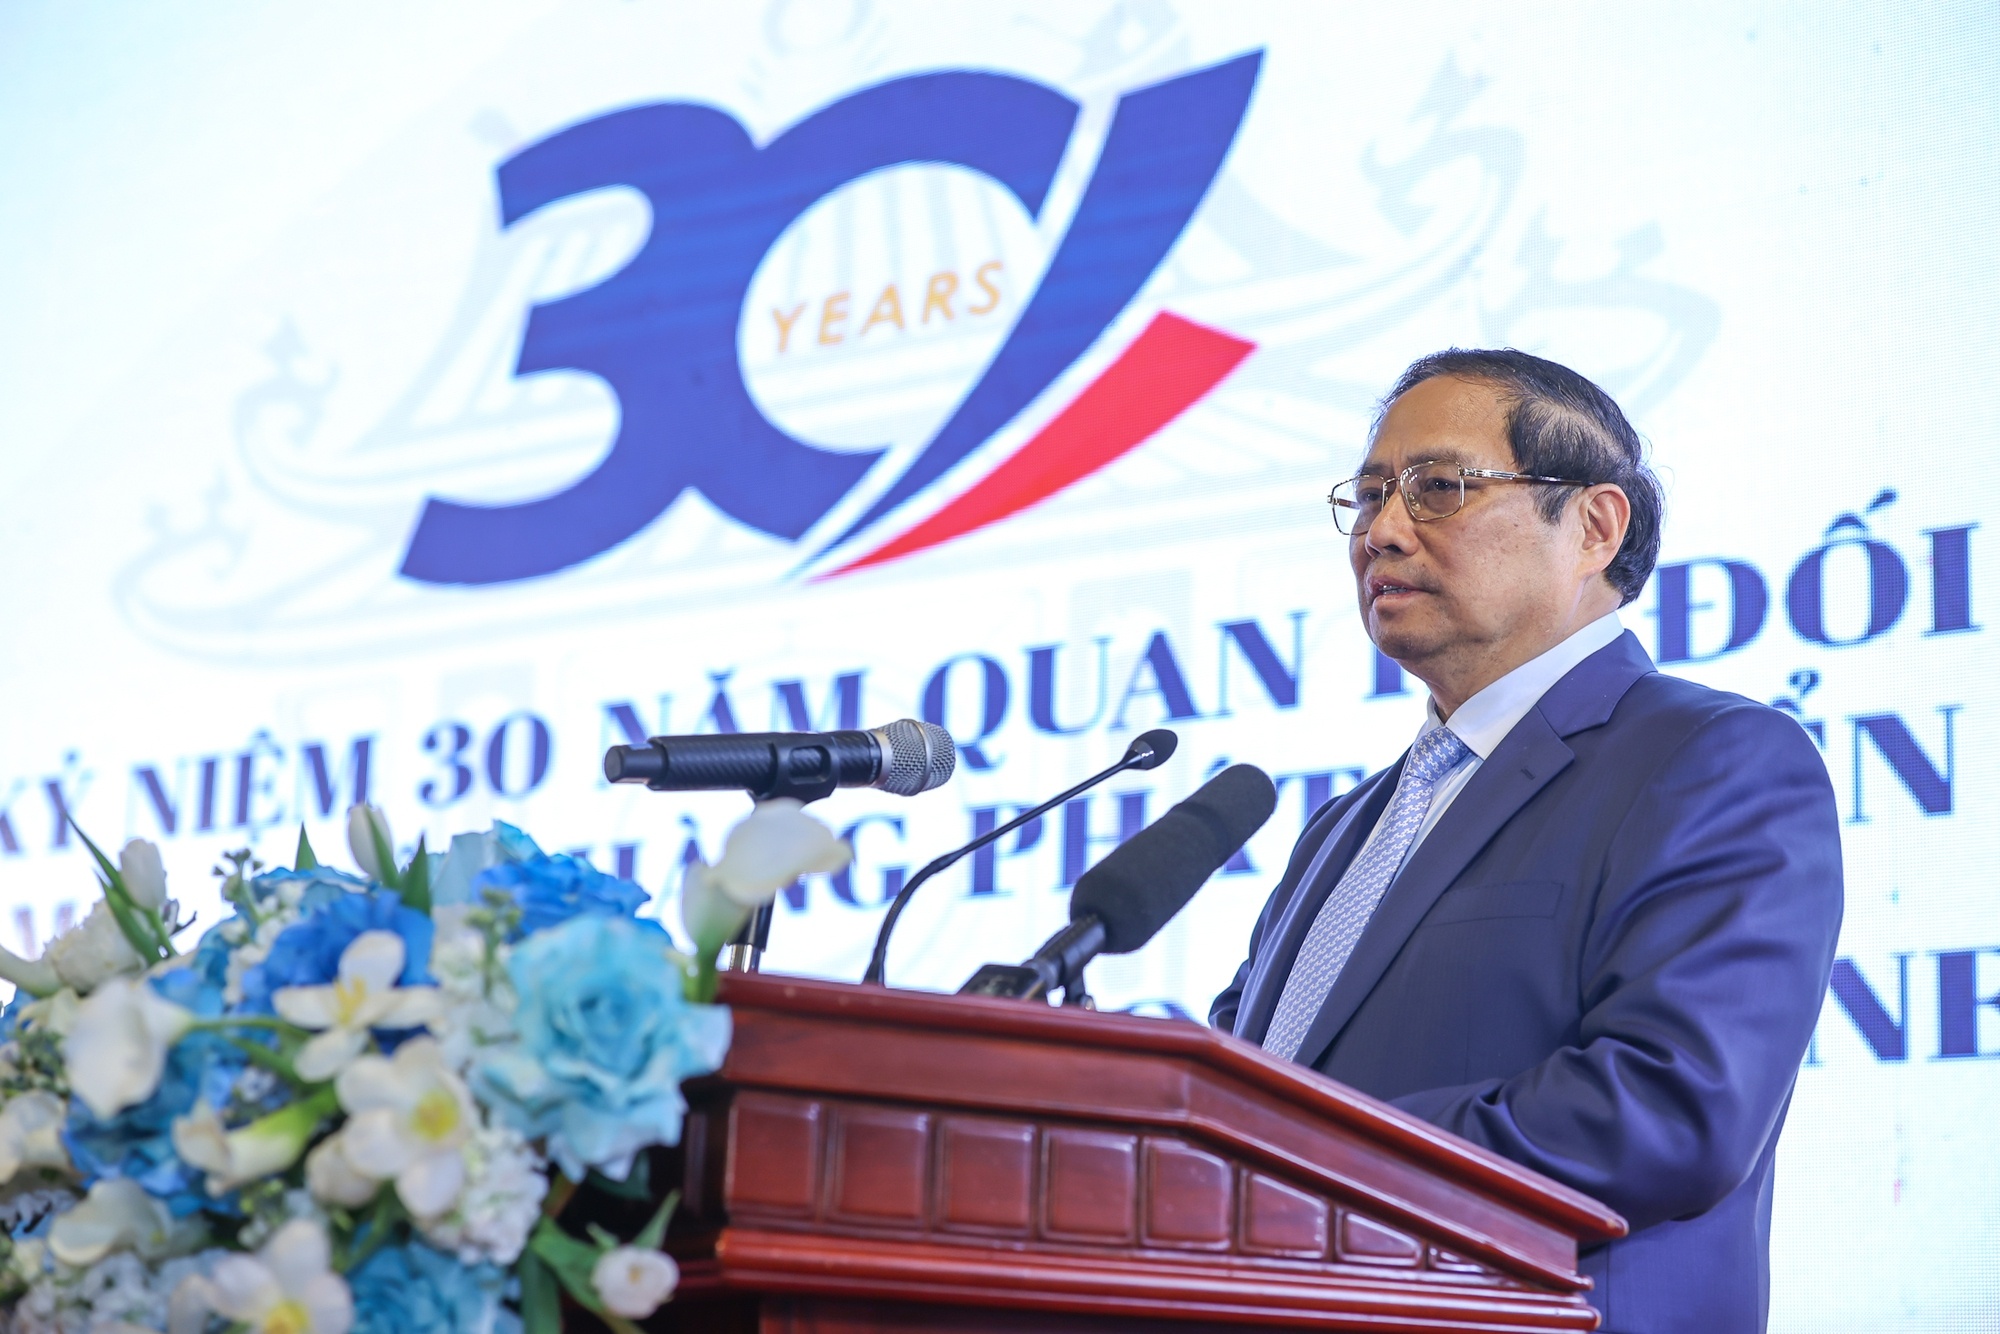 Quan hệ đối tác Việt Nam - ADB: Chặng đường dài hợp tác, phát triển thành công